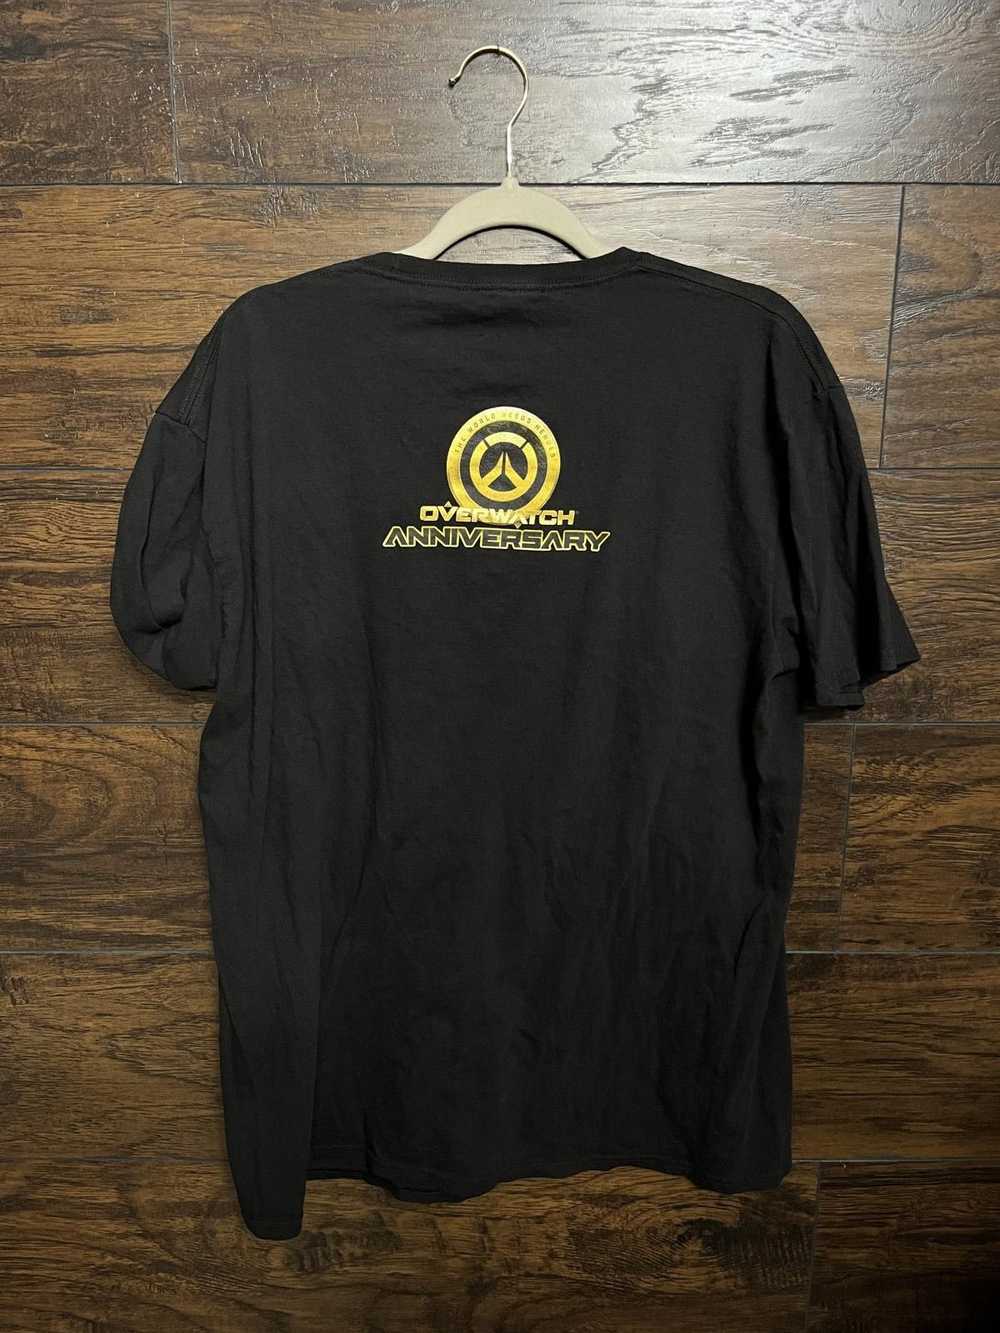 Designer Overwatch Anniversary T-shirt Blizzard x… - image 2